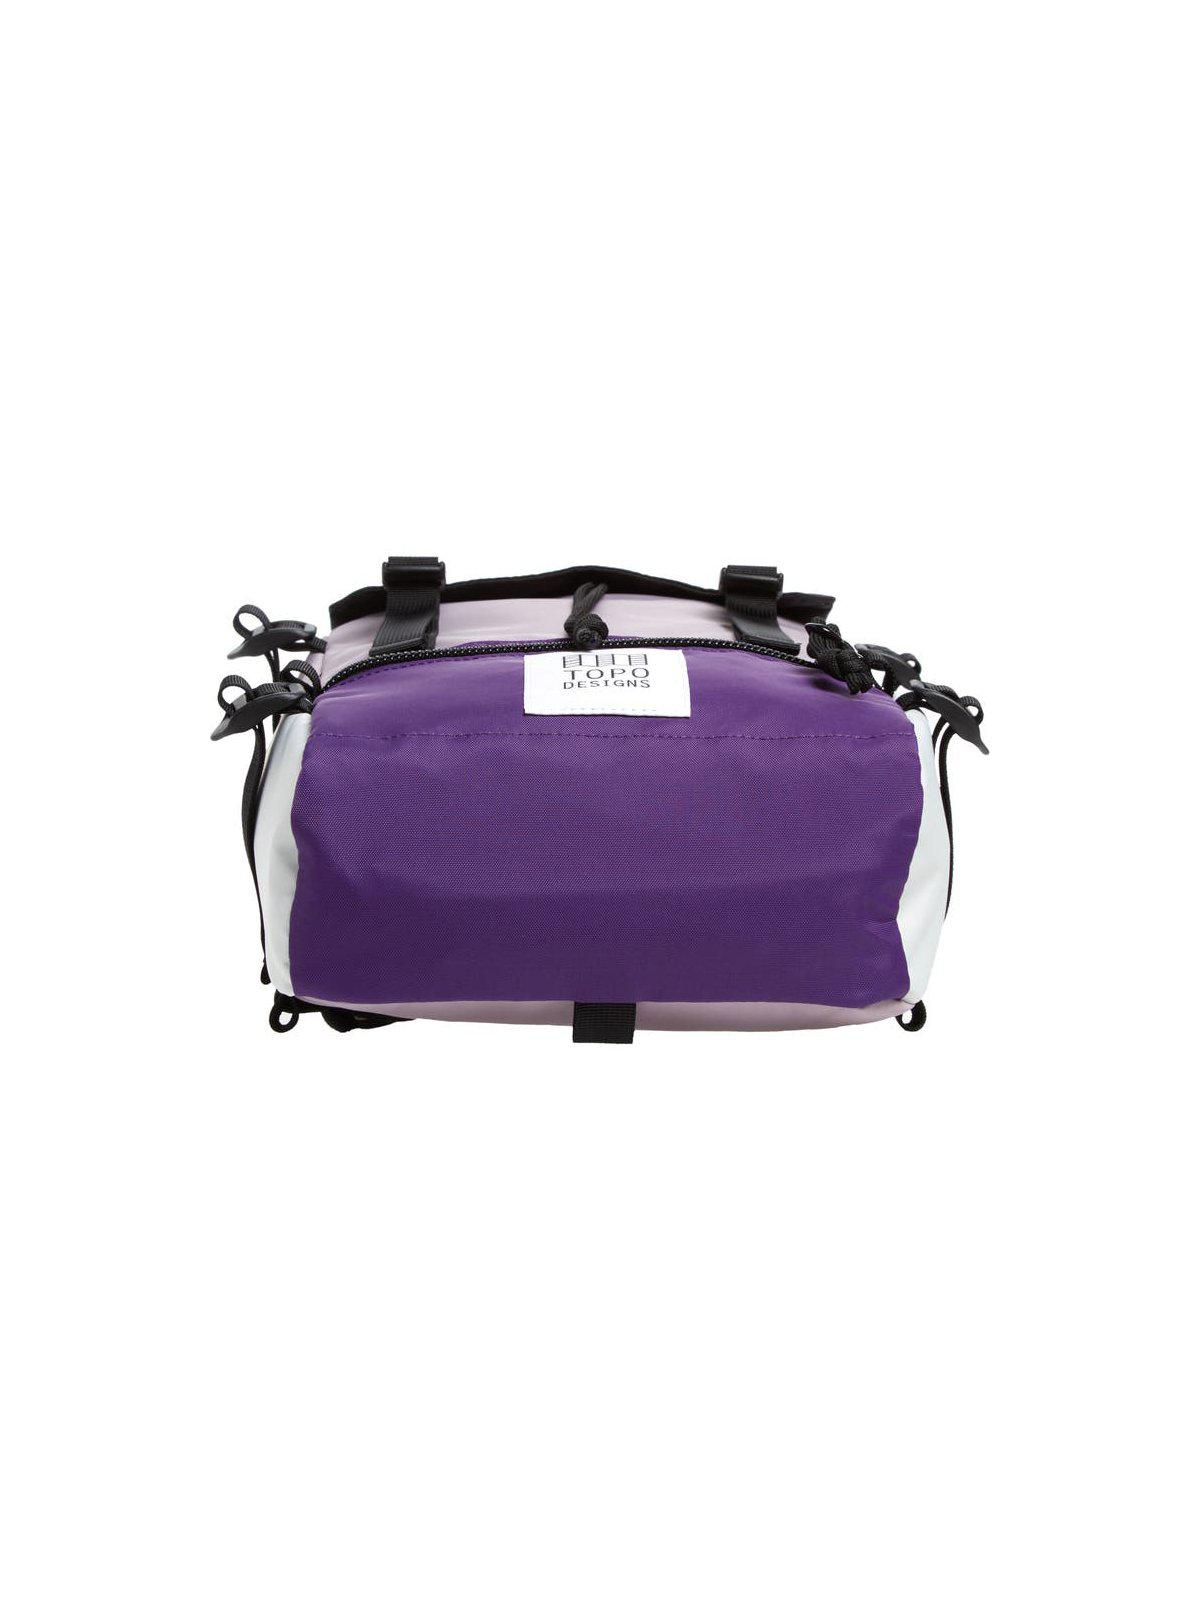 Topo Designs Rover Pack Mini Light Purple Black